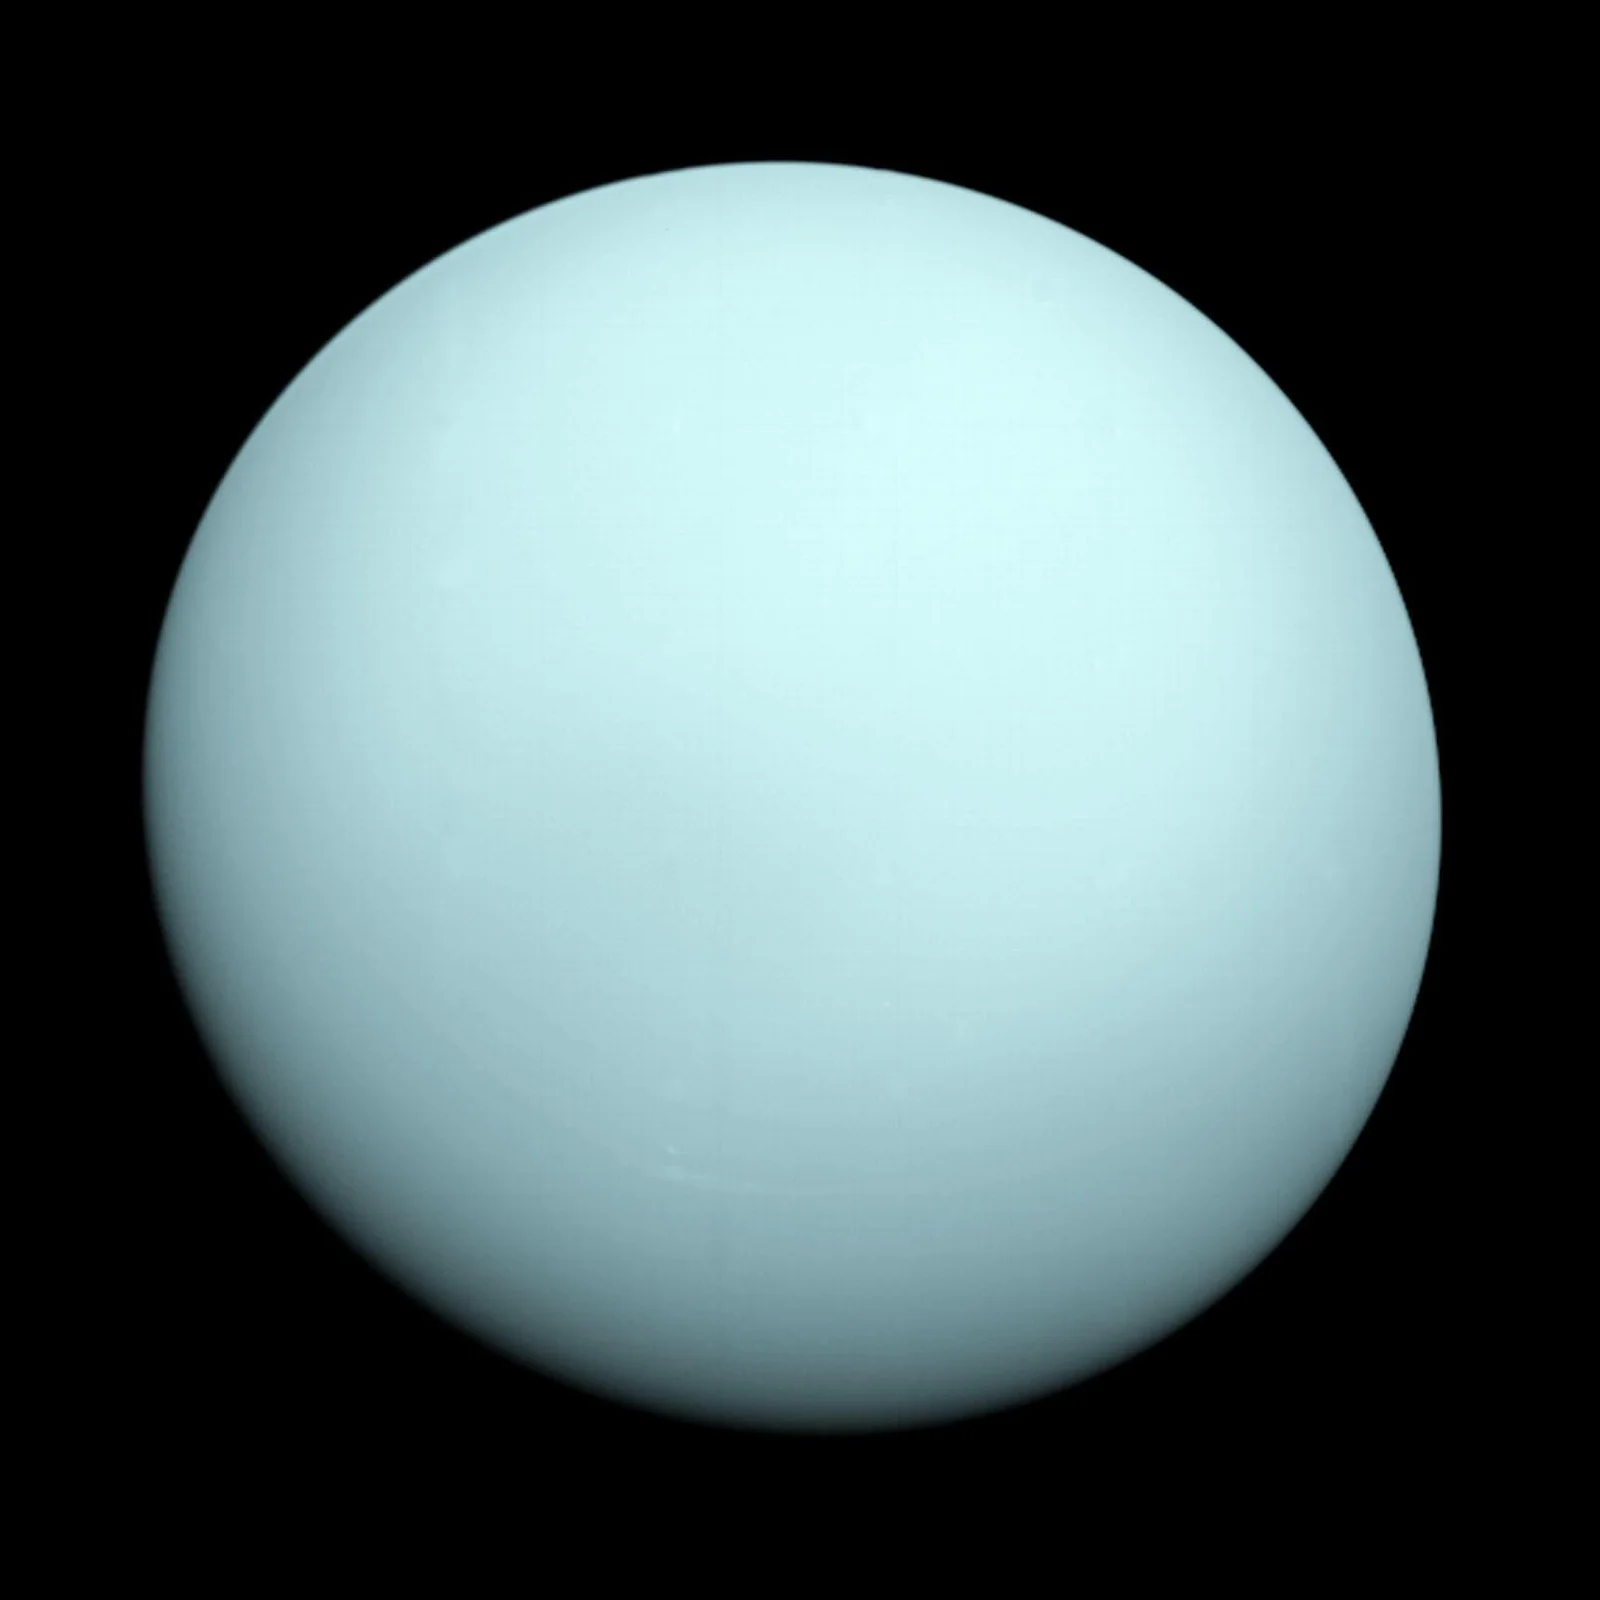 Ουρανός (Uranus) - Εικόνα: NASA/JPL-Caltech